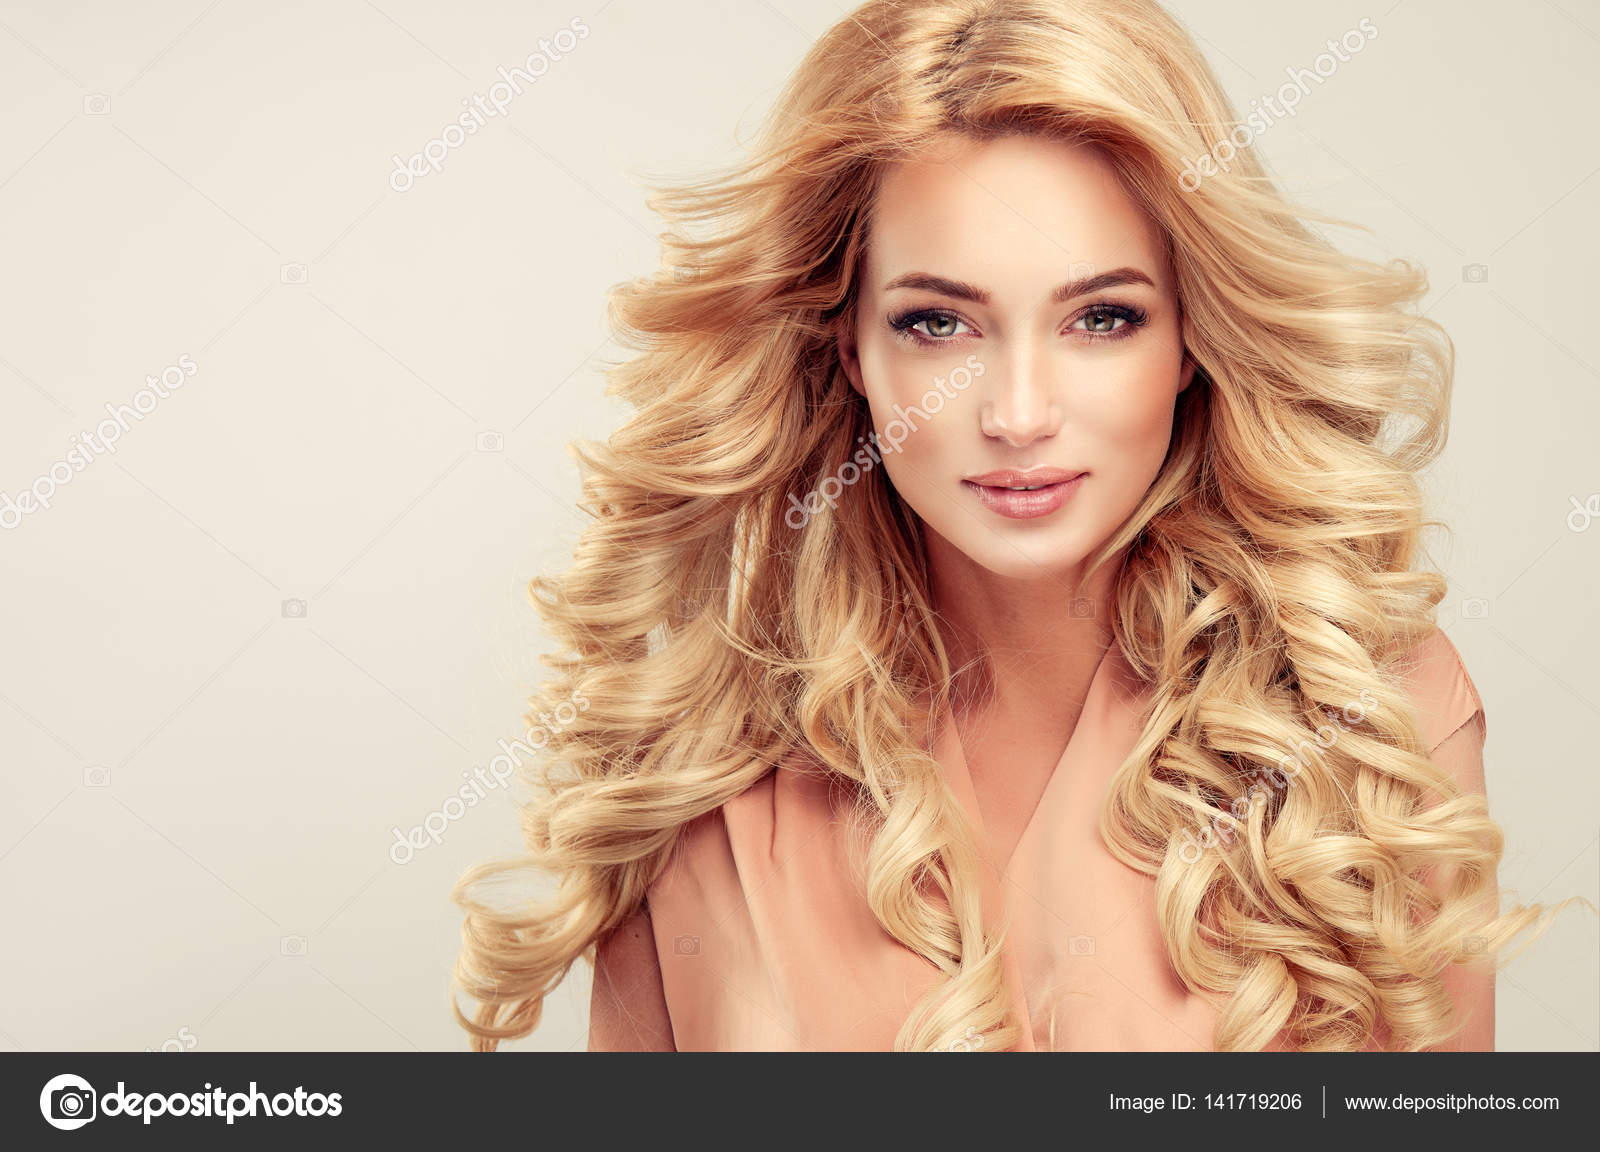 Blonde Hair Girl - wide 3